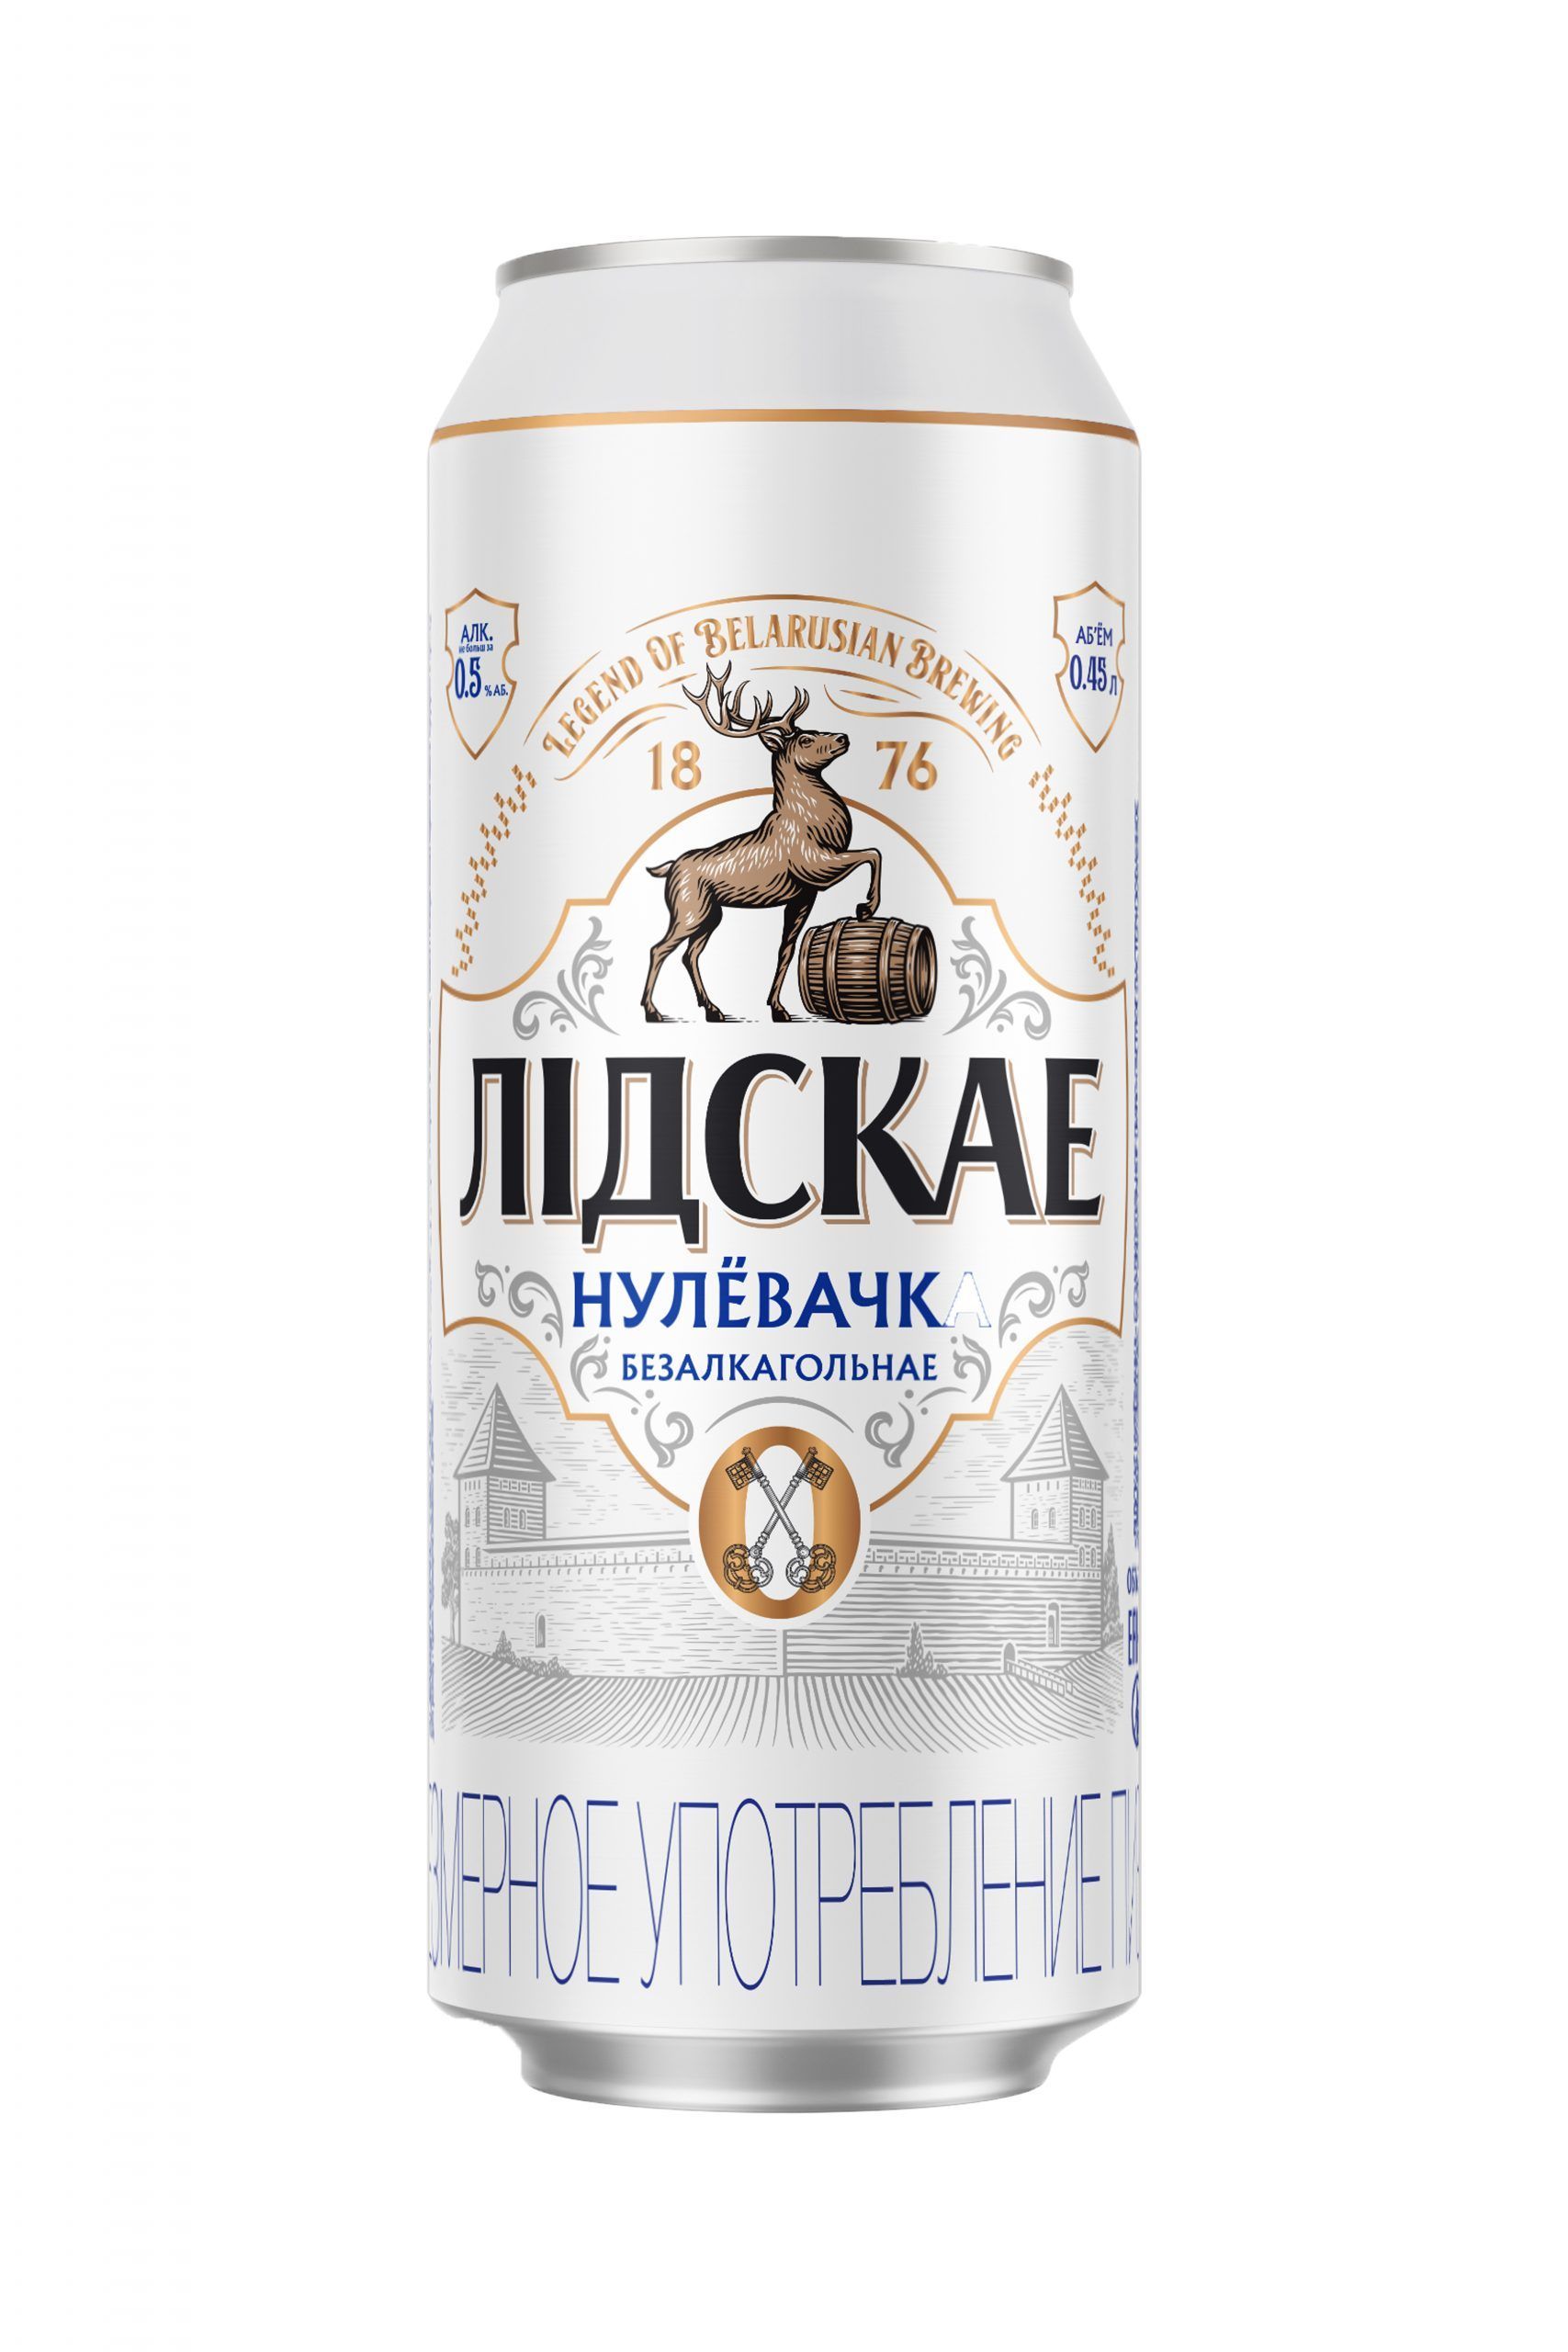 Пиво Лидское Нулевочка б/а ж/б 0,45 л (Беларусь)